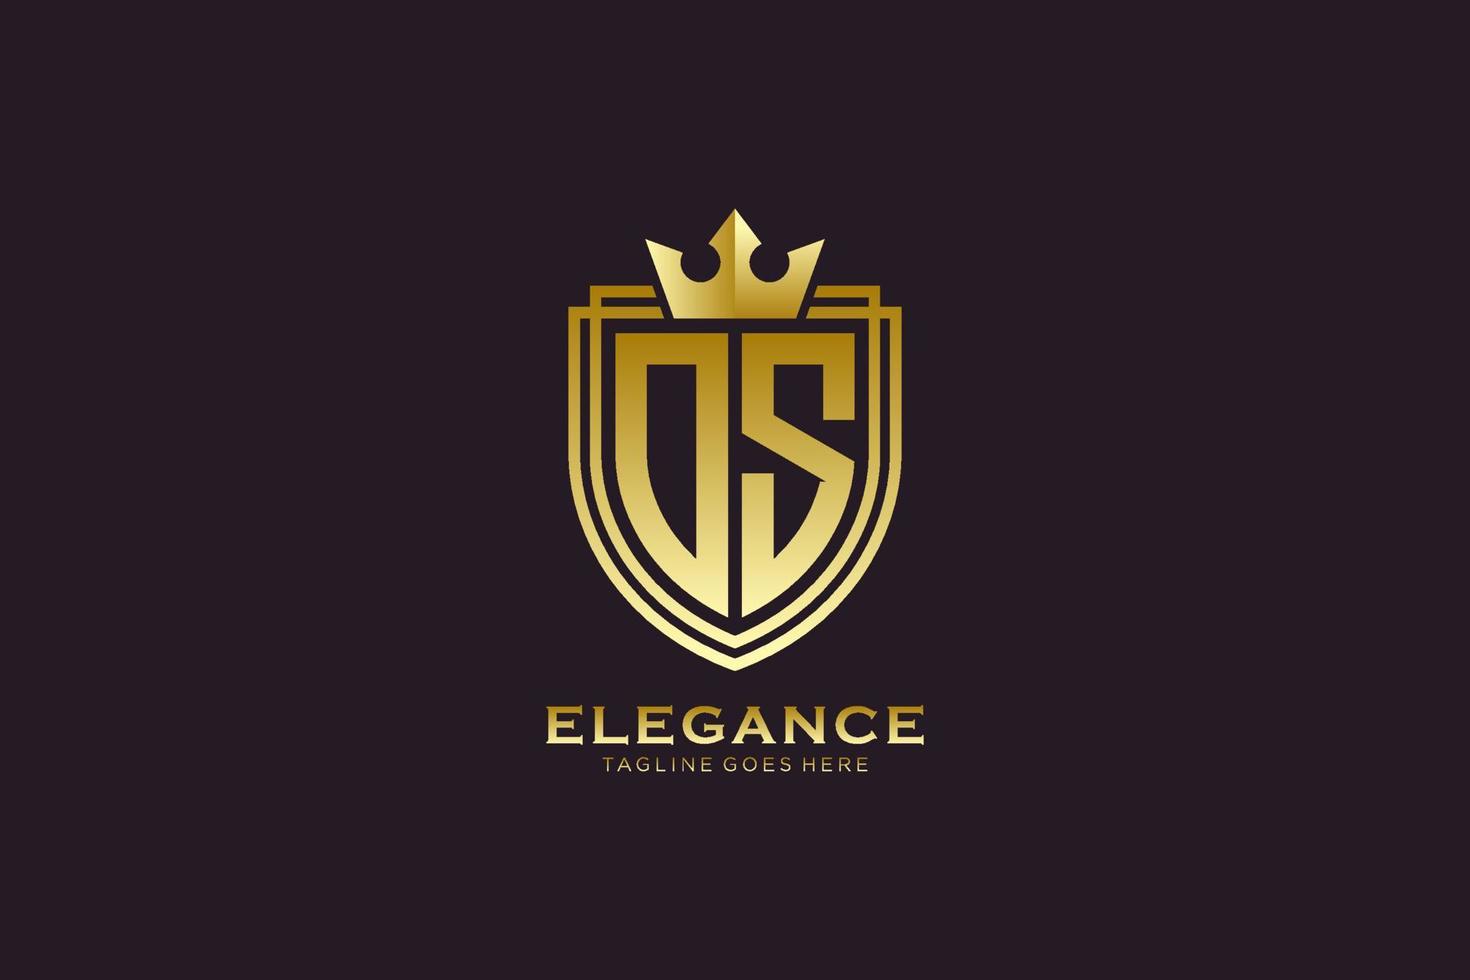 logotipo de monograma de lujo elegante inicial o plantilla de placa con pergaminos y corona real - perfecto para proyectos de marca de lujo vector